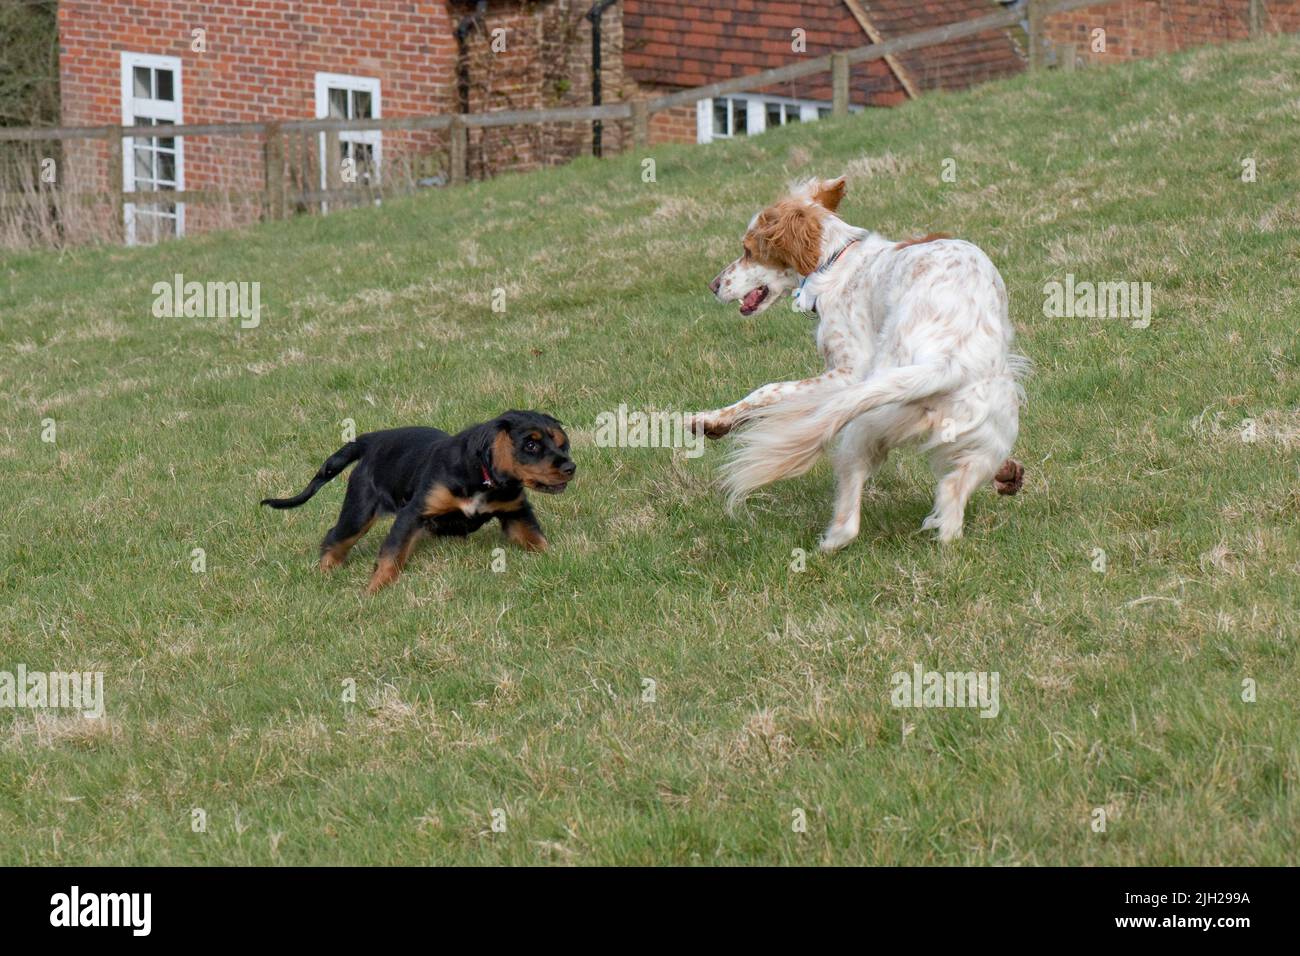 Un cane setter inglese che gioca con un cucciolo di spaniel cocker e che si diverte nonostante le loro dimensioni e la differenza di età, Berkshire, aprile Foto Stock